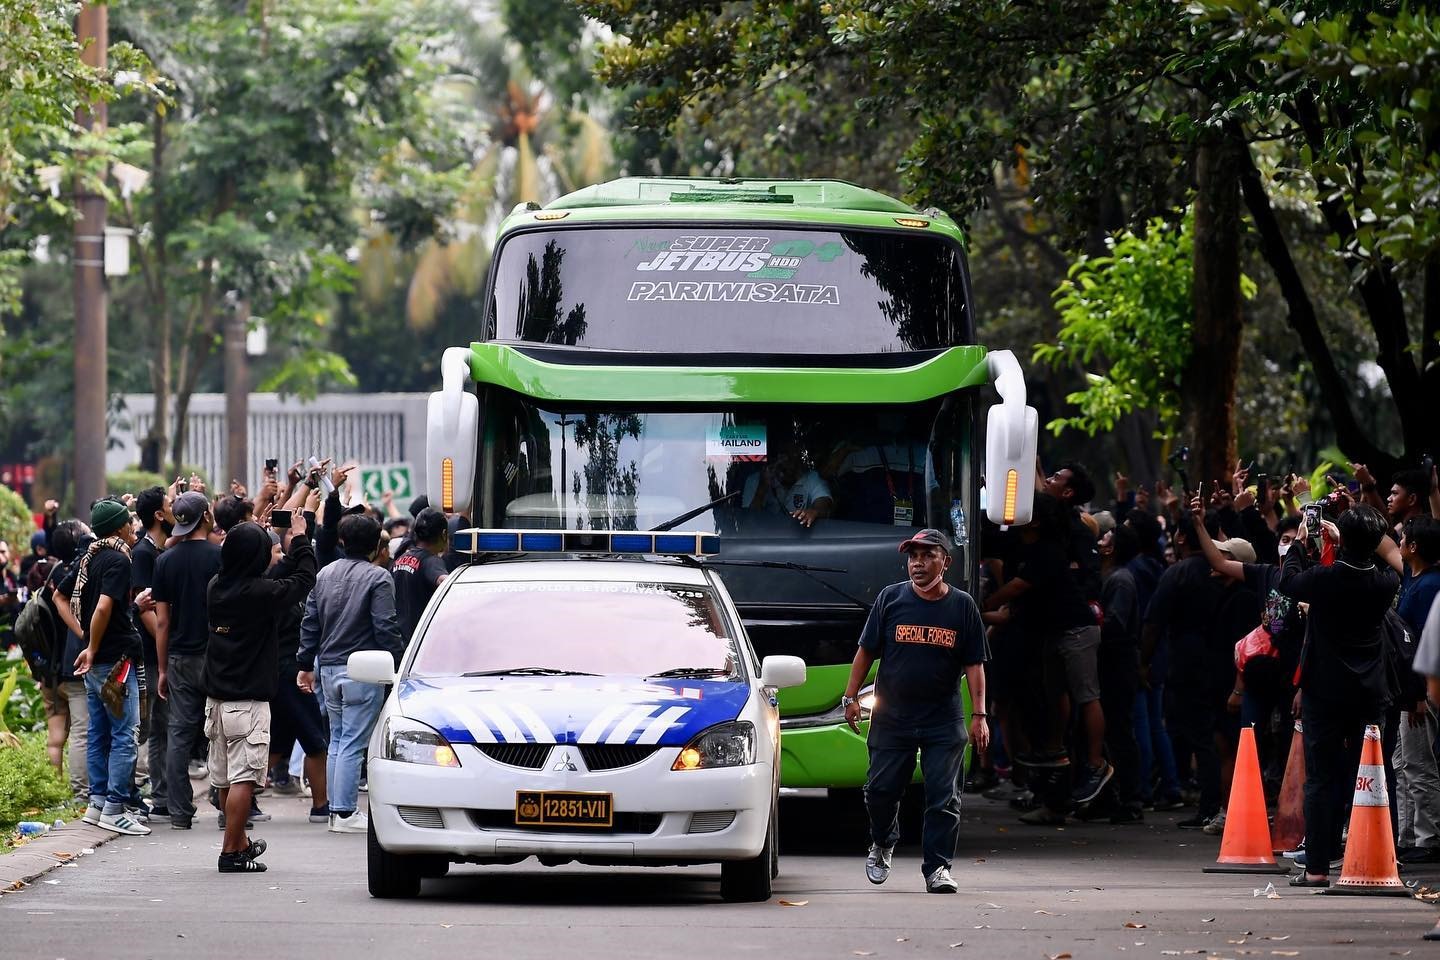 Xe của Thái Lan bị cổ động viên Indonesia ném vỡ kính. Ảnh: GOAL Thailand